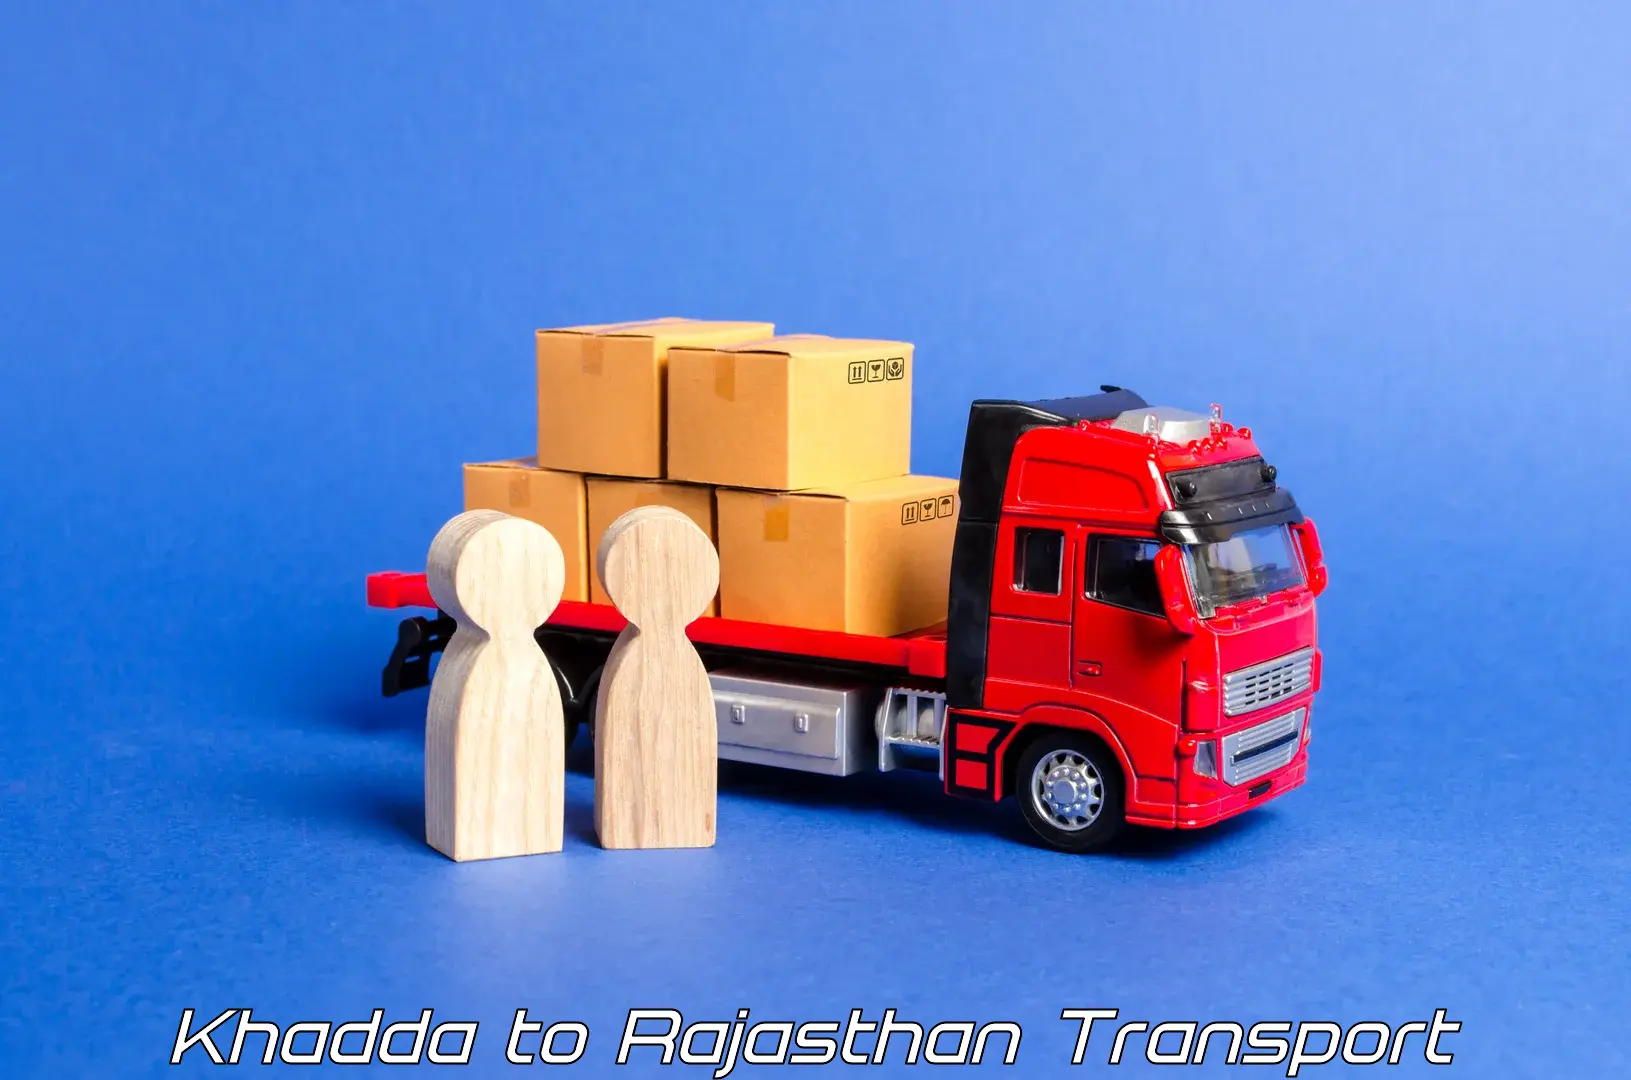 Lorry transport service Khadda to Chaksu